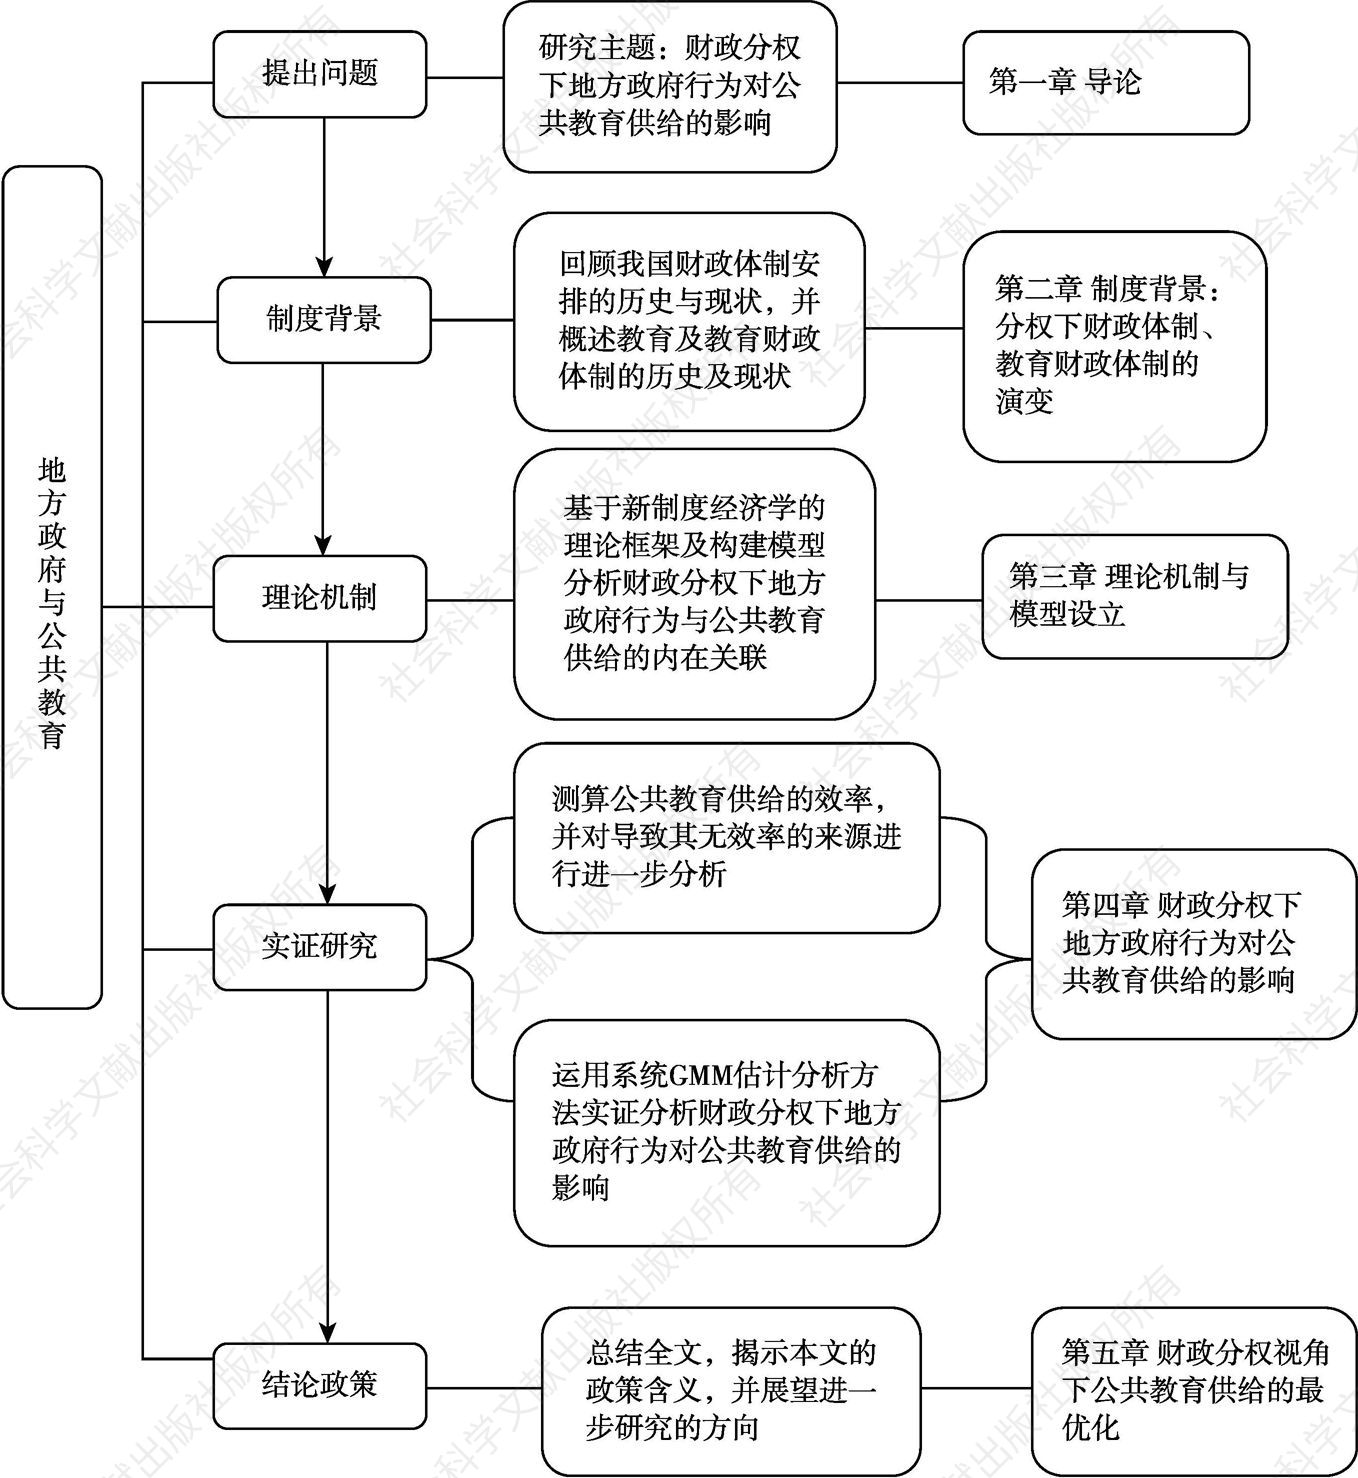 图1-1 研究思路框架